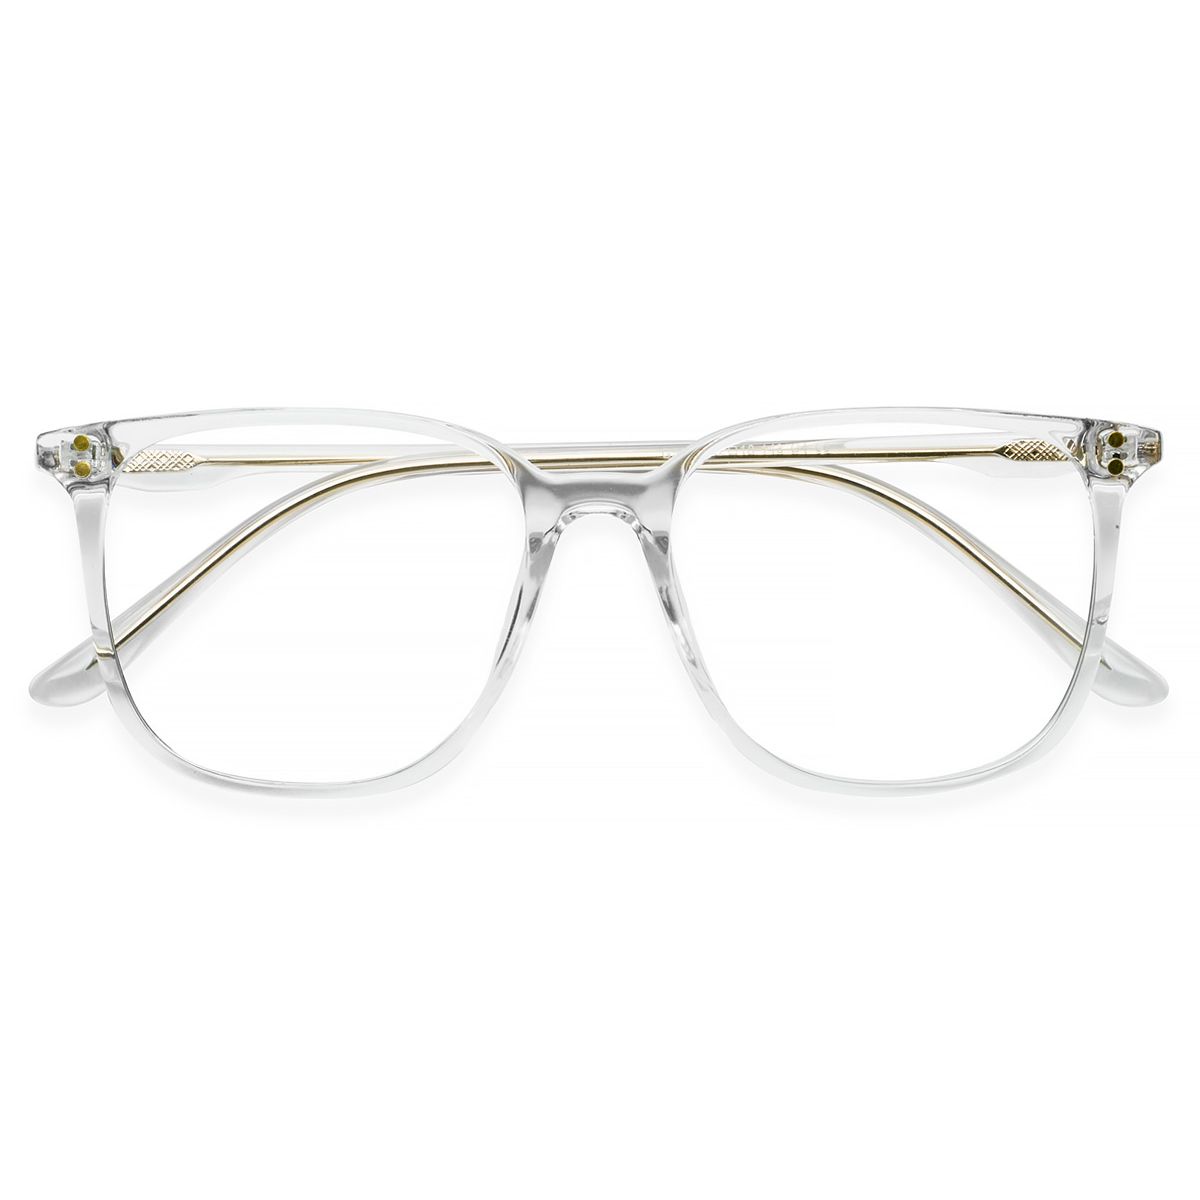 G5813 Square Clear Eyeglasses Frames | Leoptique